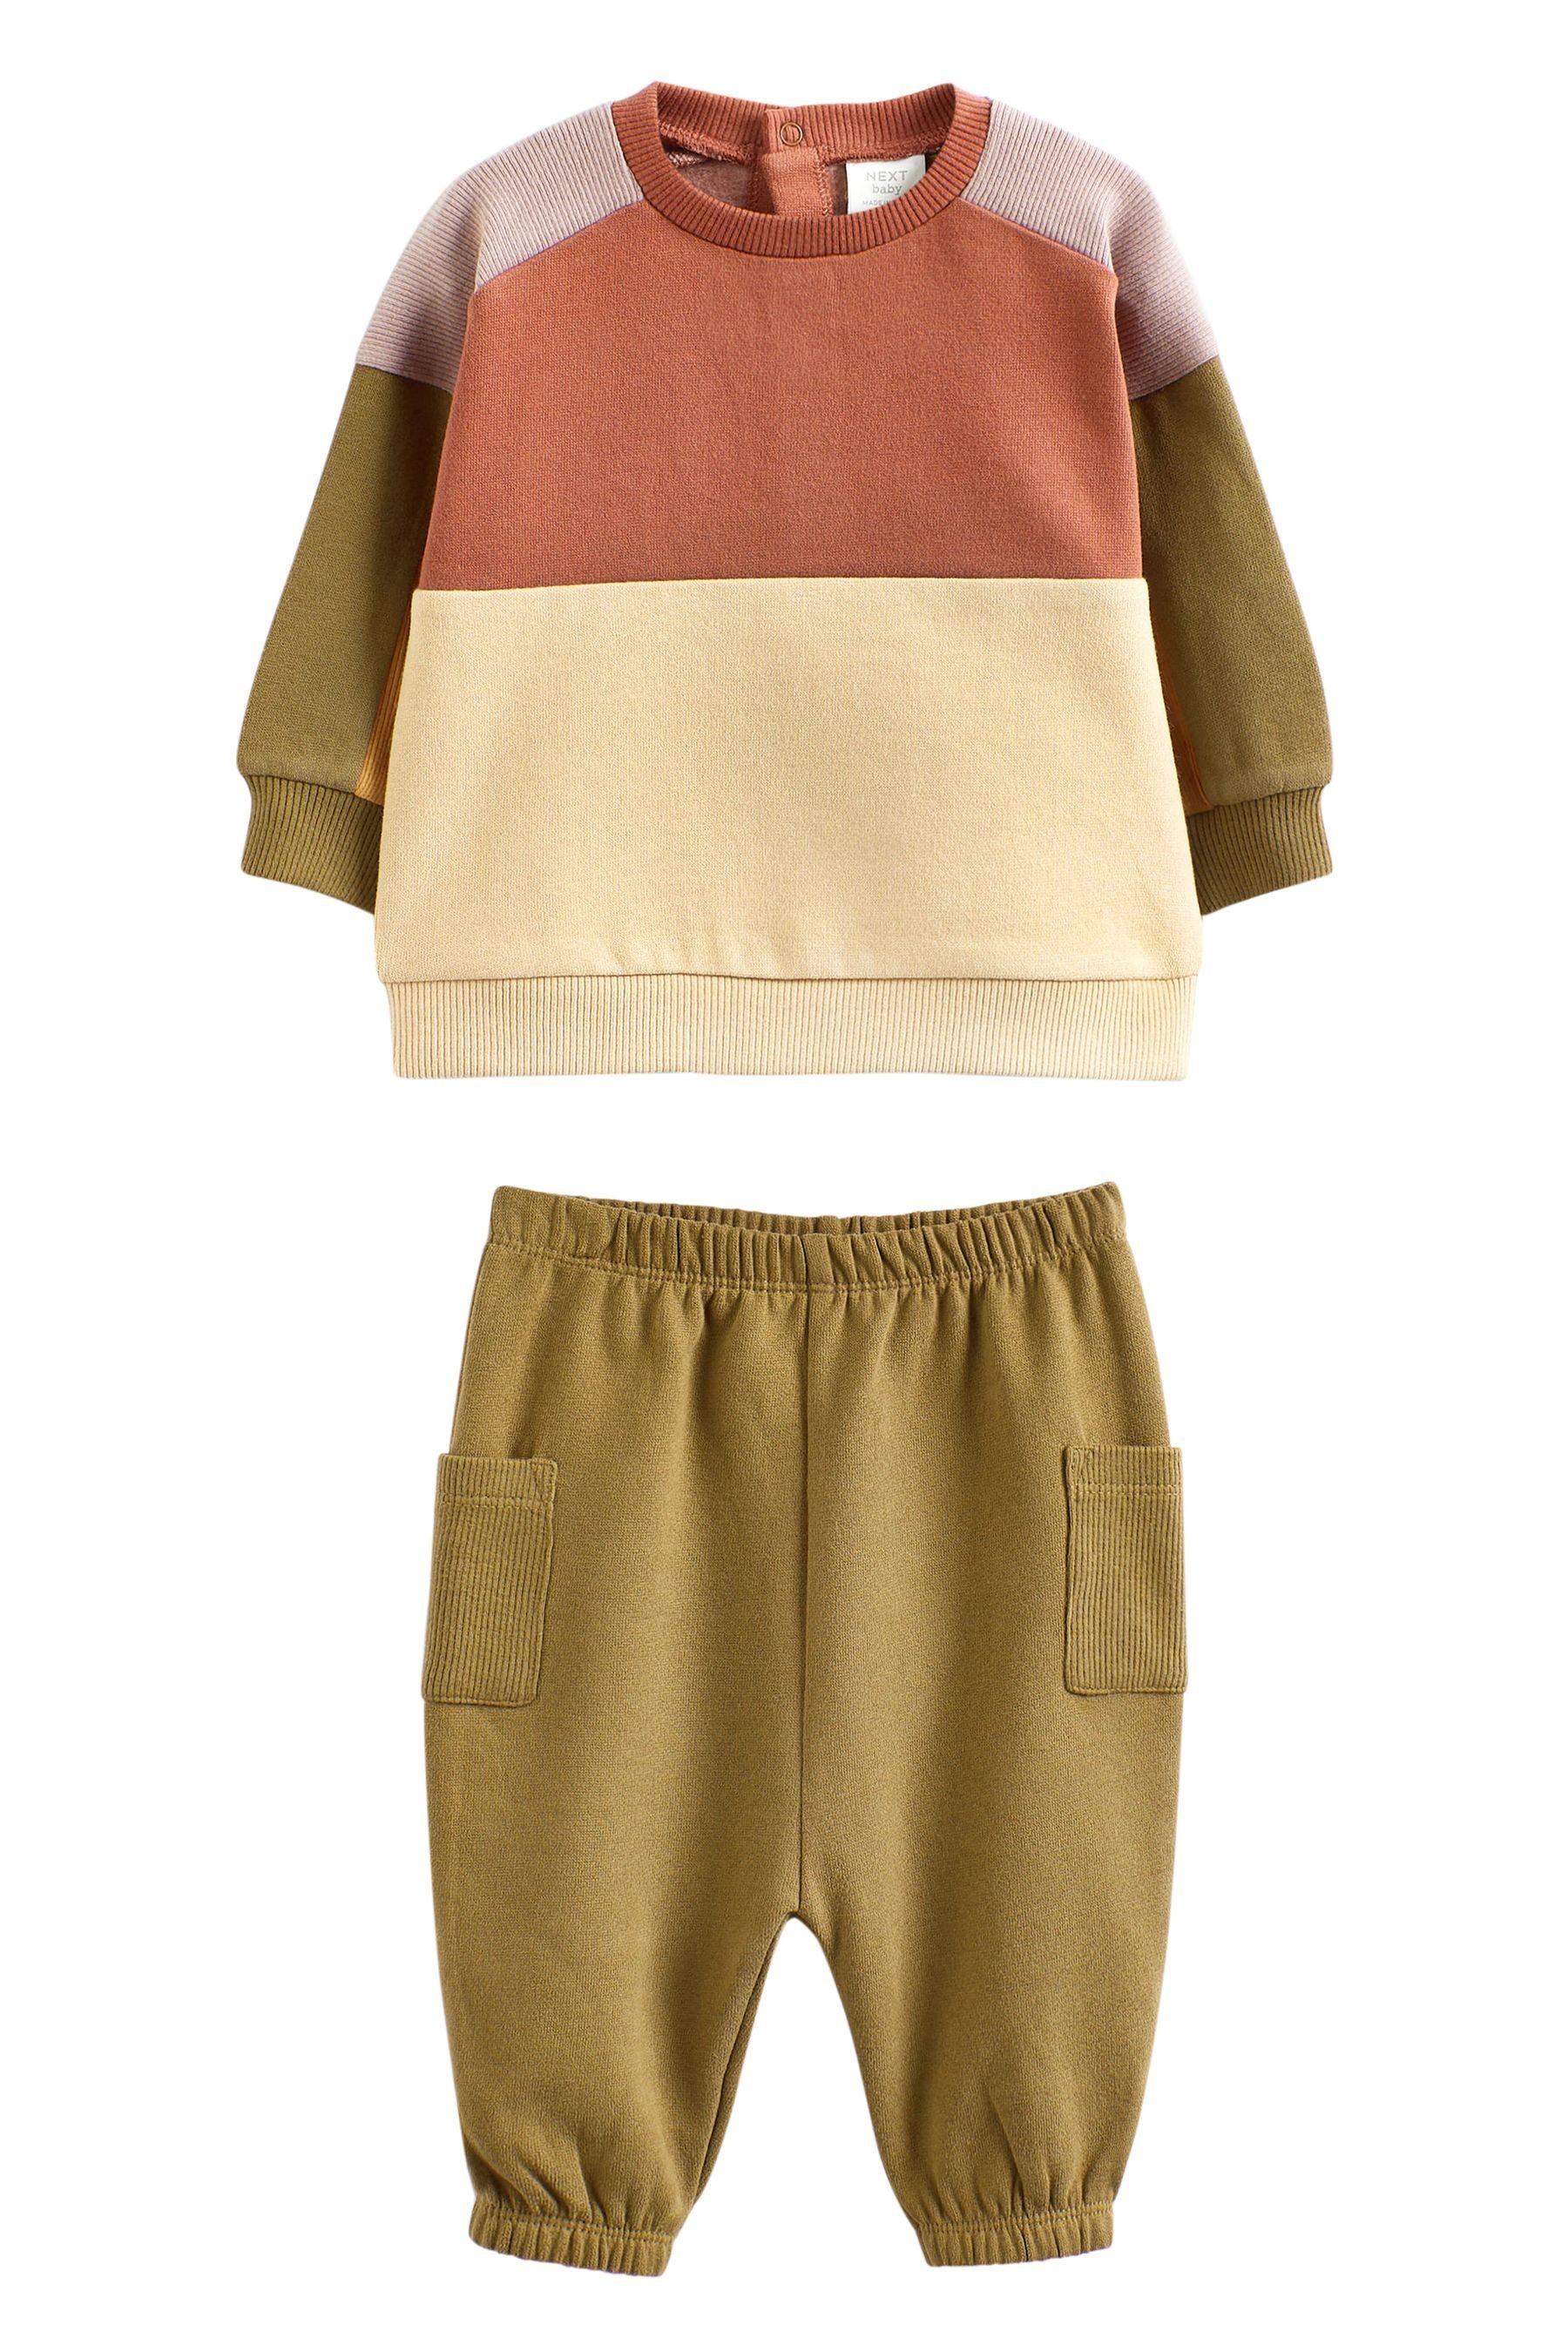 Next Sweatanzug (2-tlg) 2-teiliges Sweatshirt mit Baby-Set Green/Cream Colourblock und Jogginghose